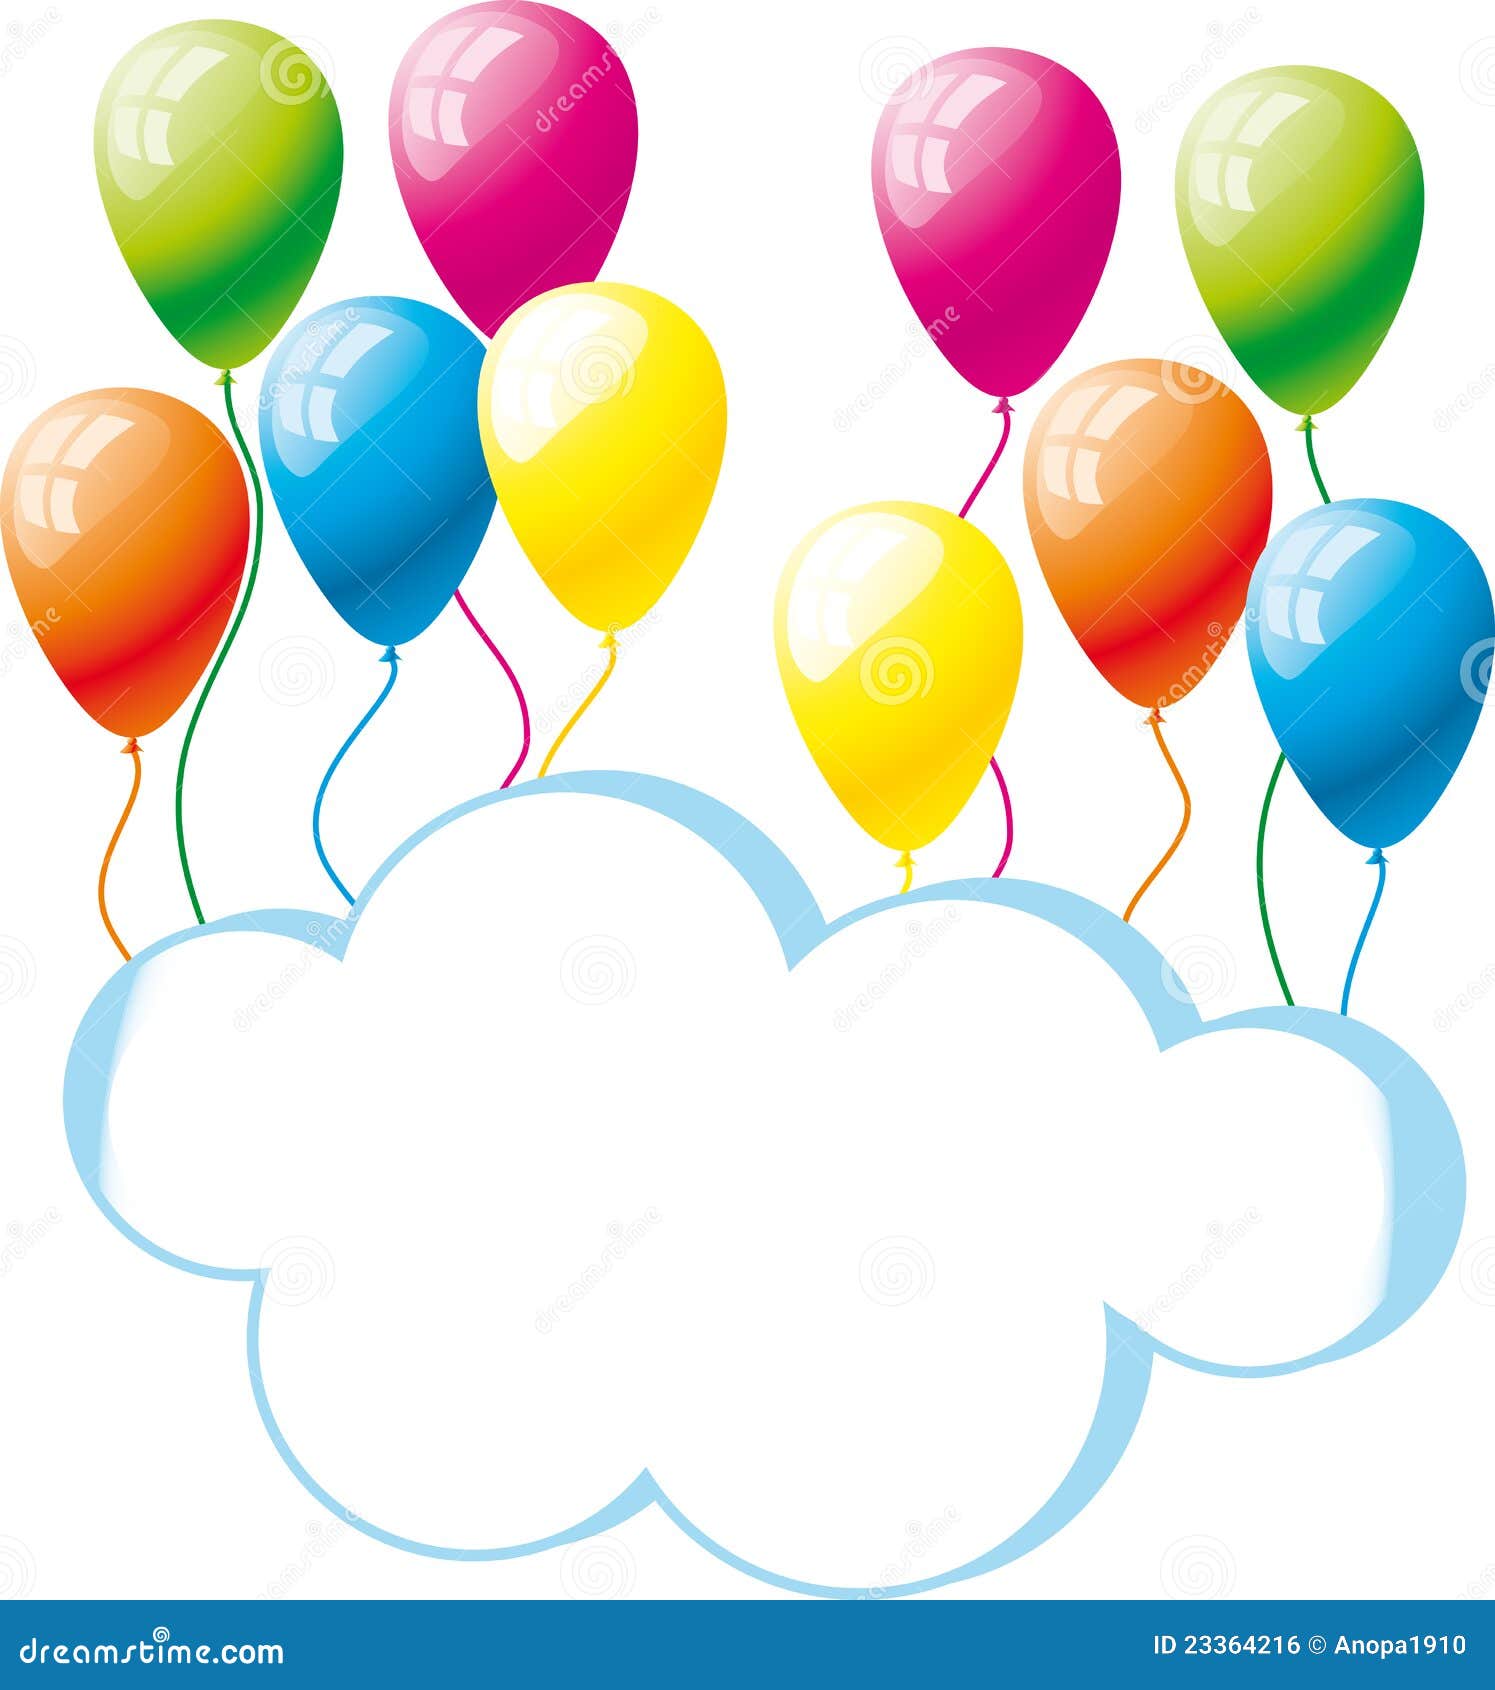 clip art balloons congratulations - photo #24